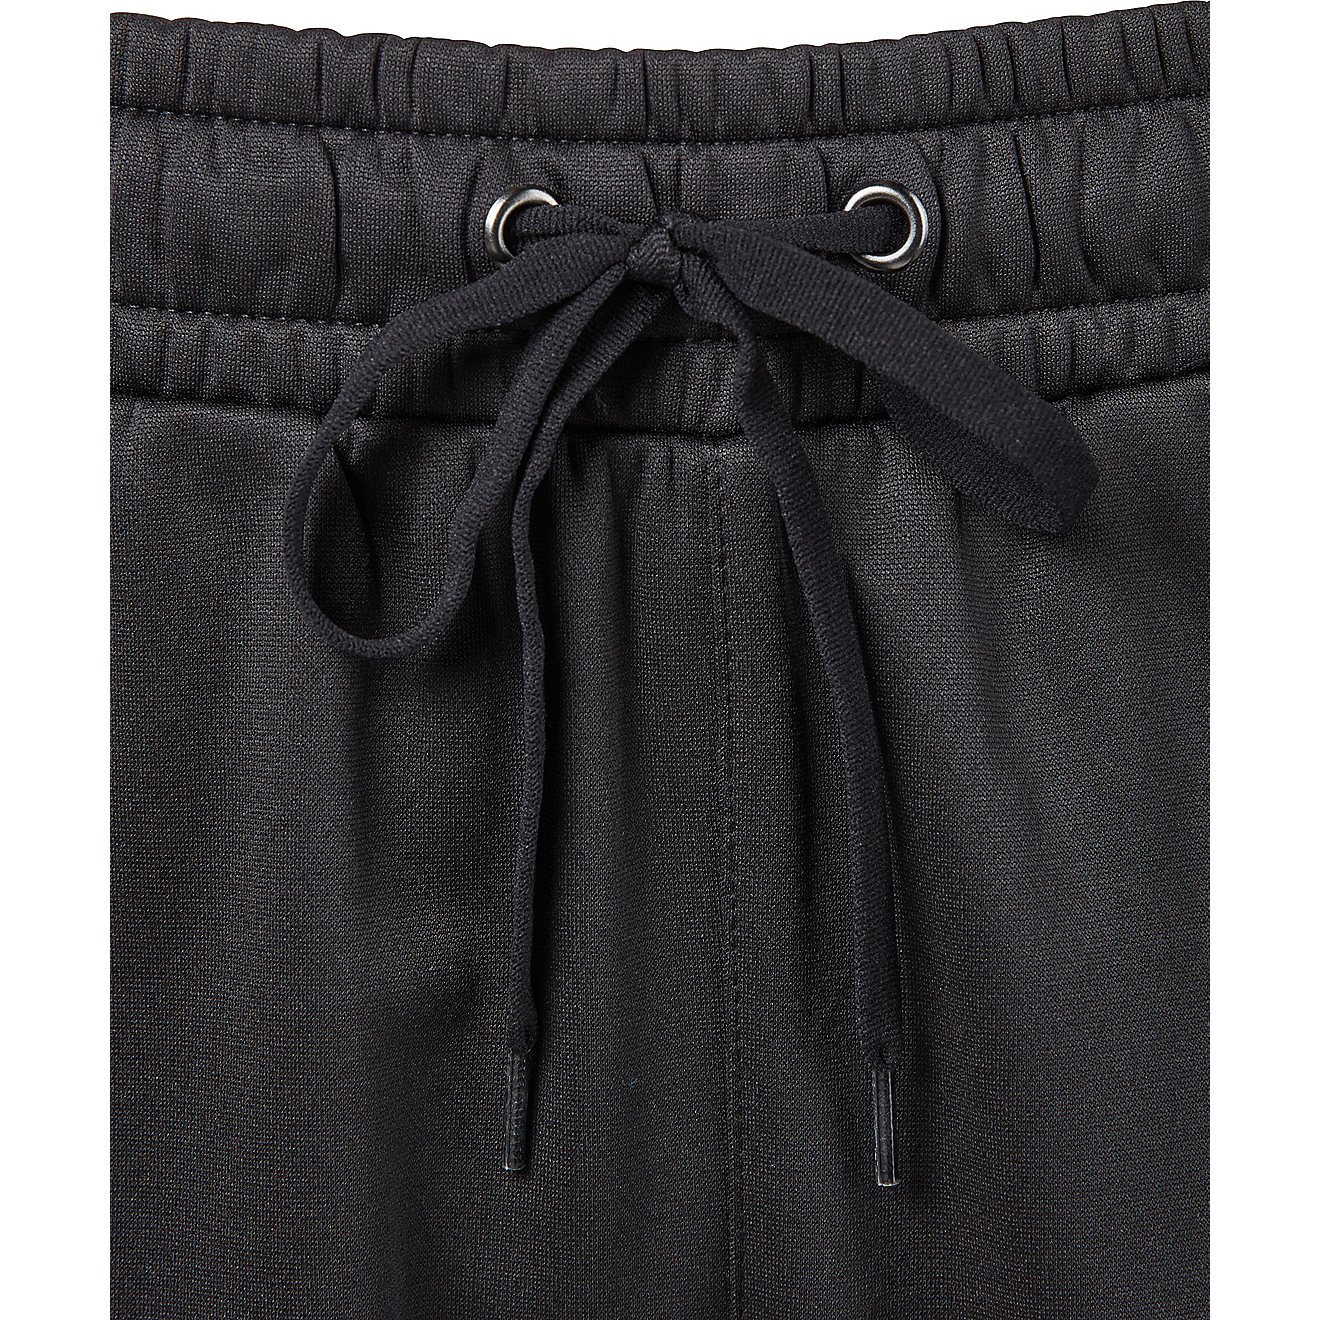 BCG Women's Tapered Fleece Pants                                                                                                 - view number 4